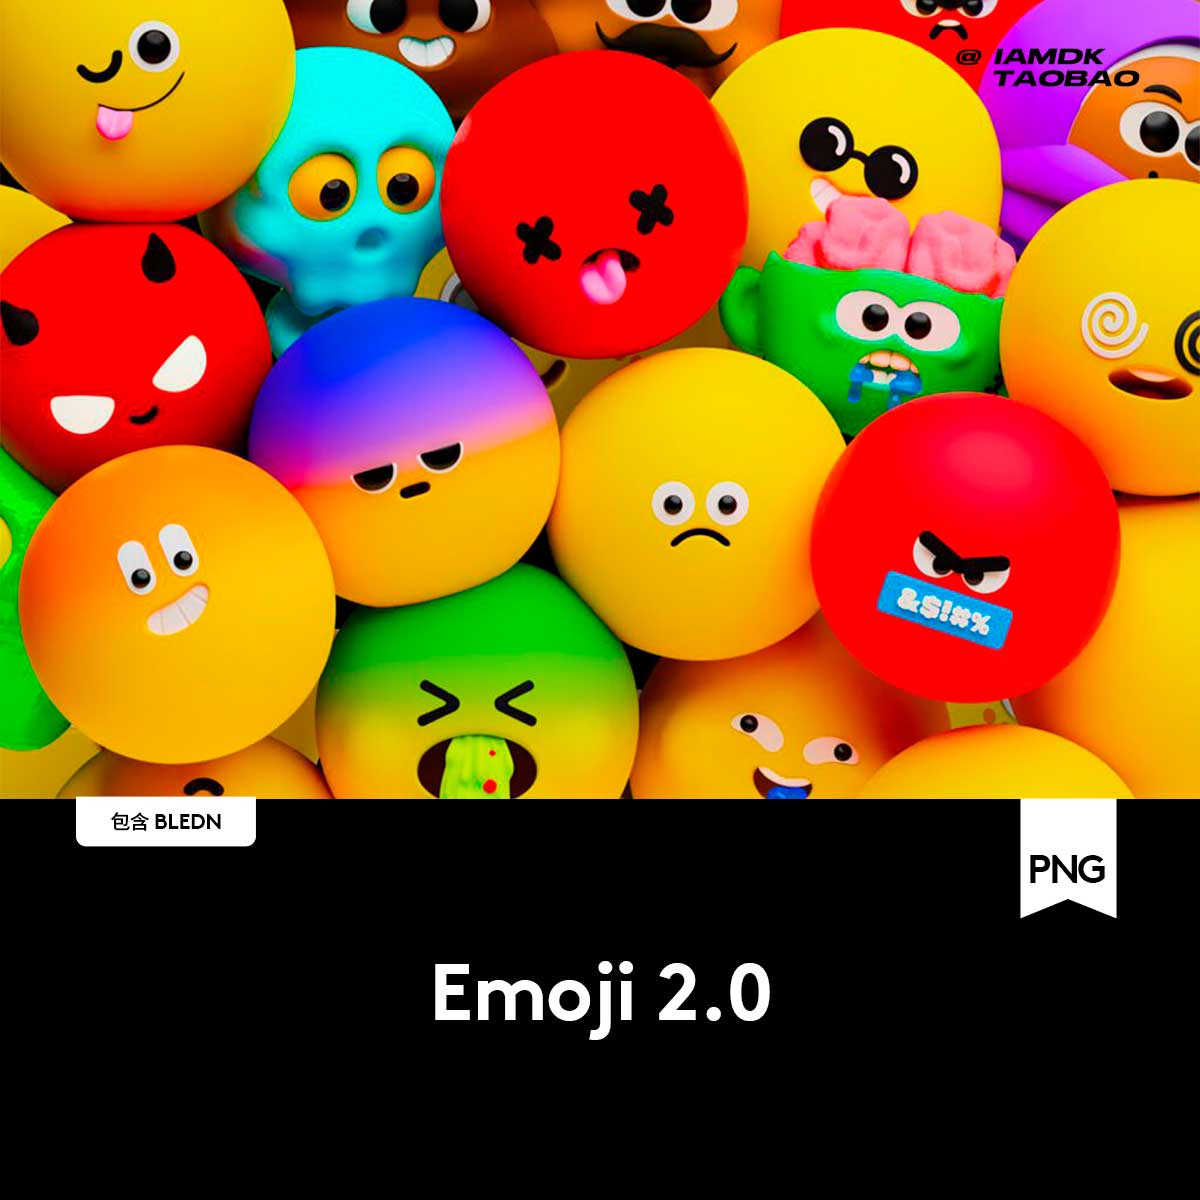 220+款卡通趣味Emoji全套3D表情包插图Fig/Blend/Png格式图标素材